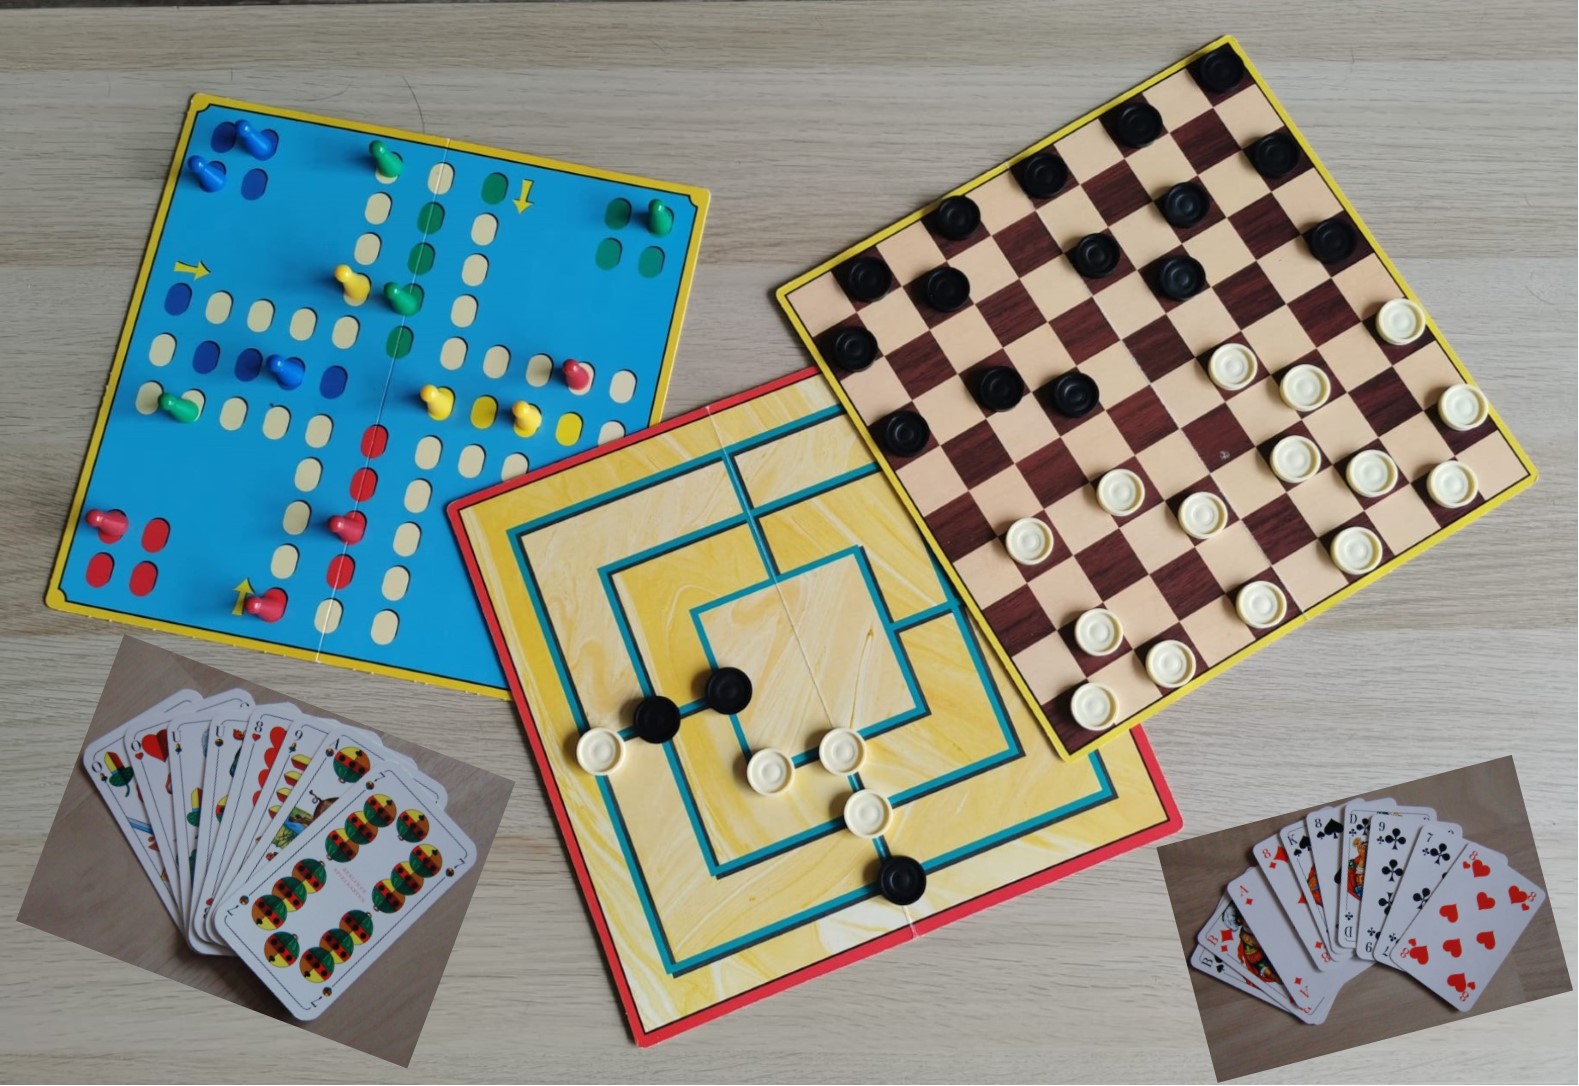 Bild zeigt drei Brettspiele mit Spielsteinen (Mensch ärger dich nicht, Damespielbrett und Mühlenspielbrett) und zwei Kartenspielblätter Skat und Schafkopf auf einem Tisch